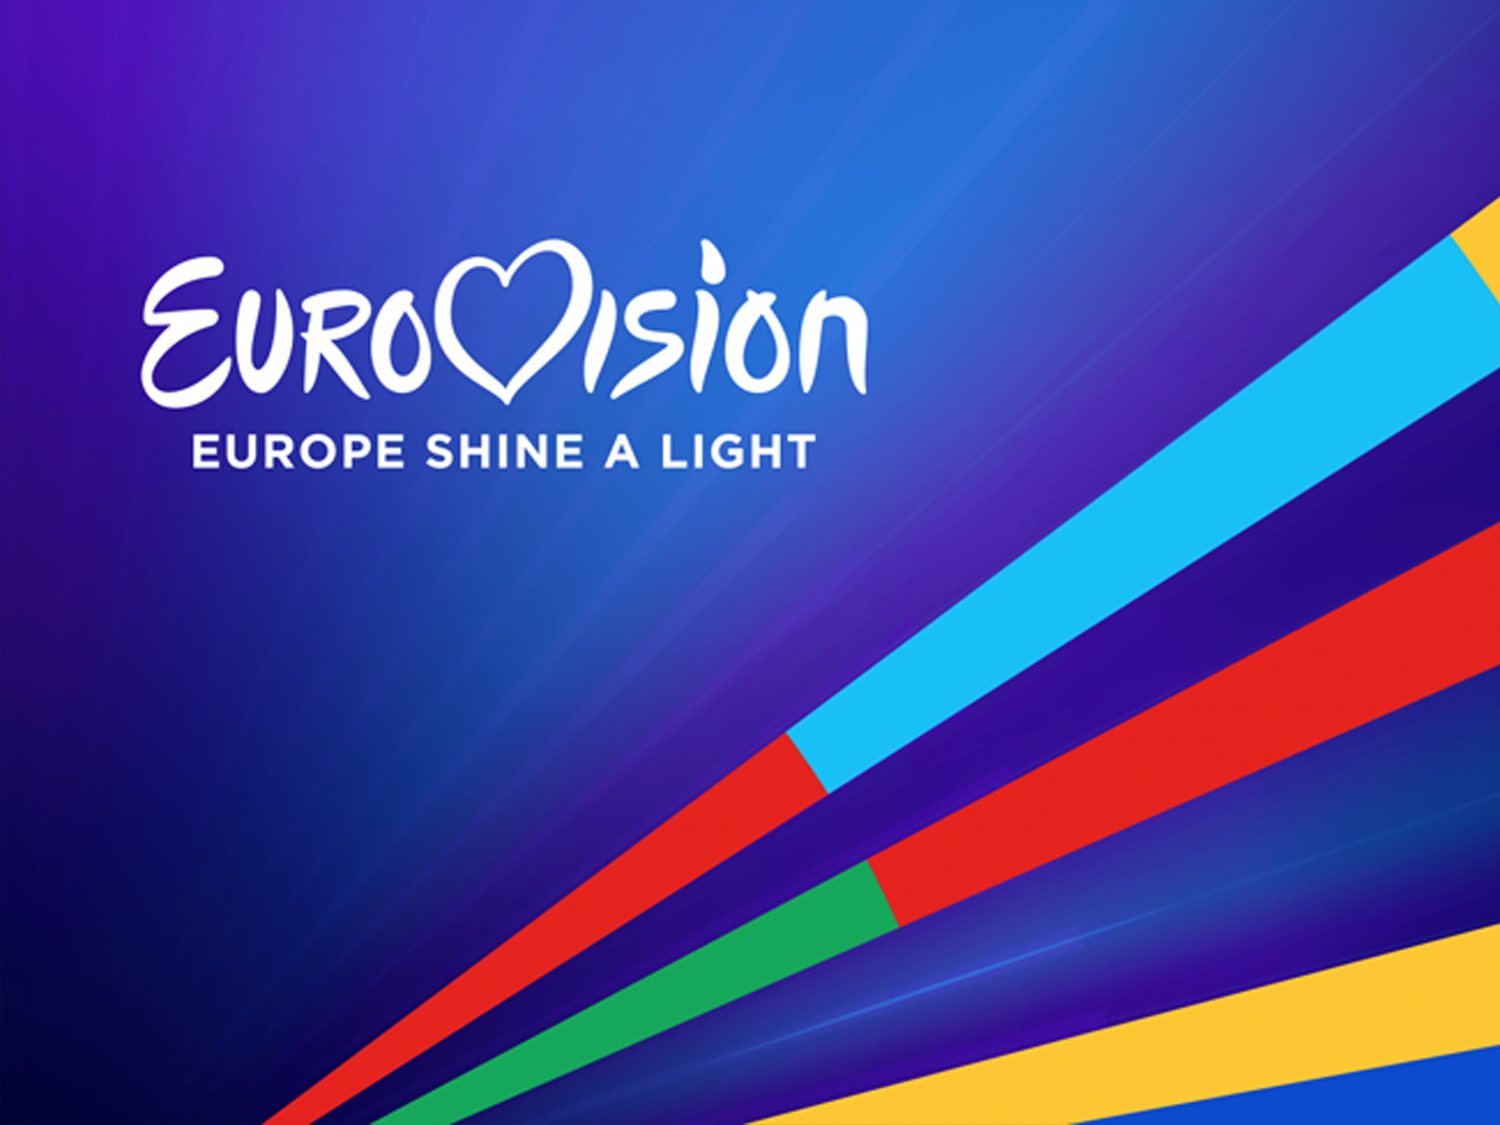 'Europe Shine A Light', el homenaje de la UER como reemplazo televisivo de Eurovisión 2020